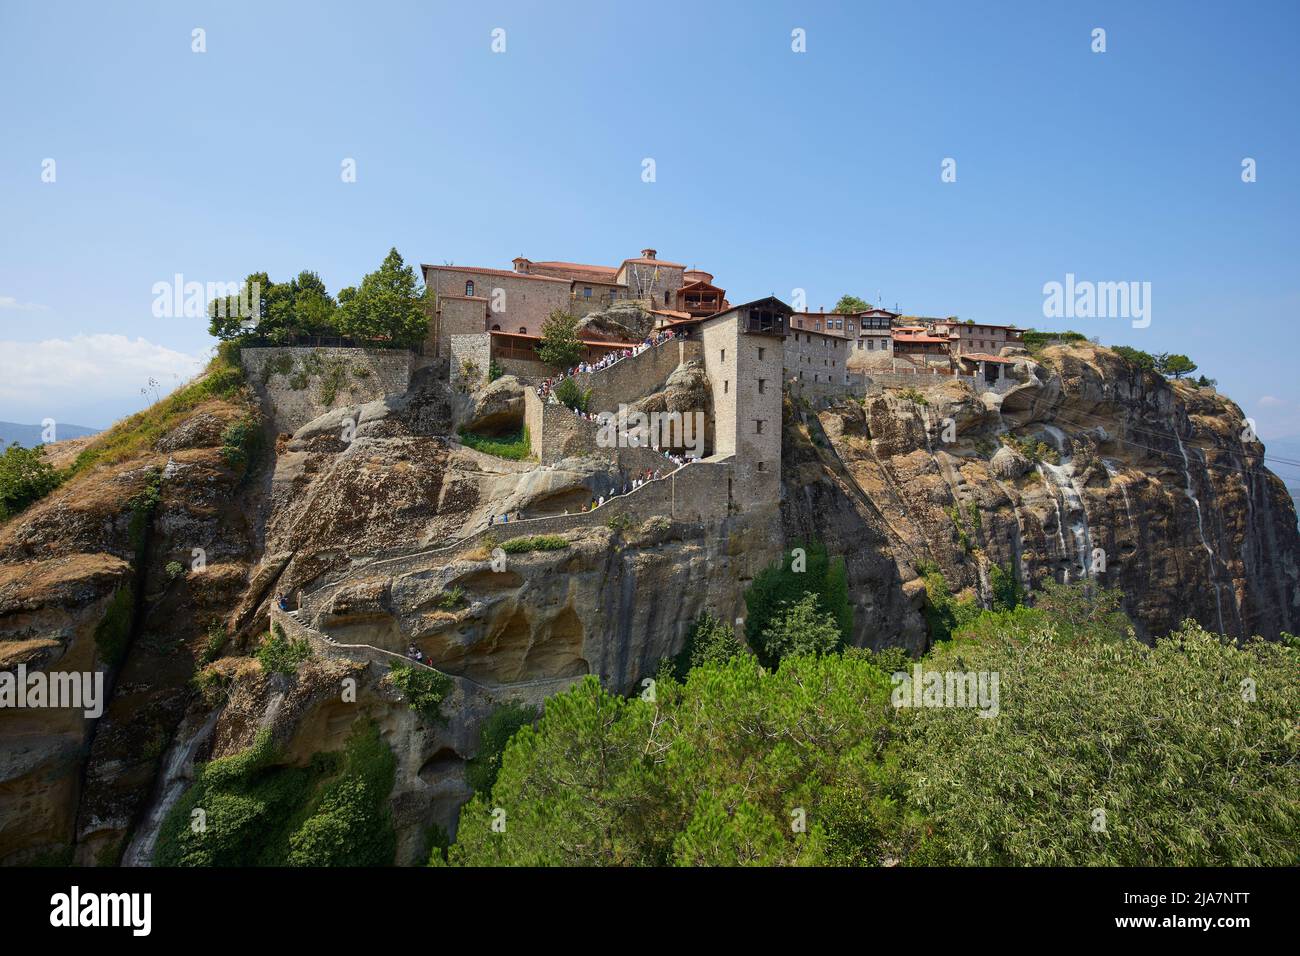 Les monastères typiques de Meteora, Grèce Banque D'Images